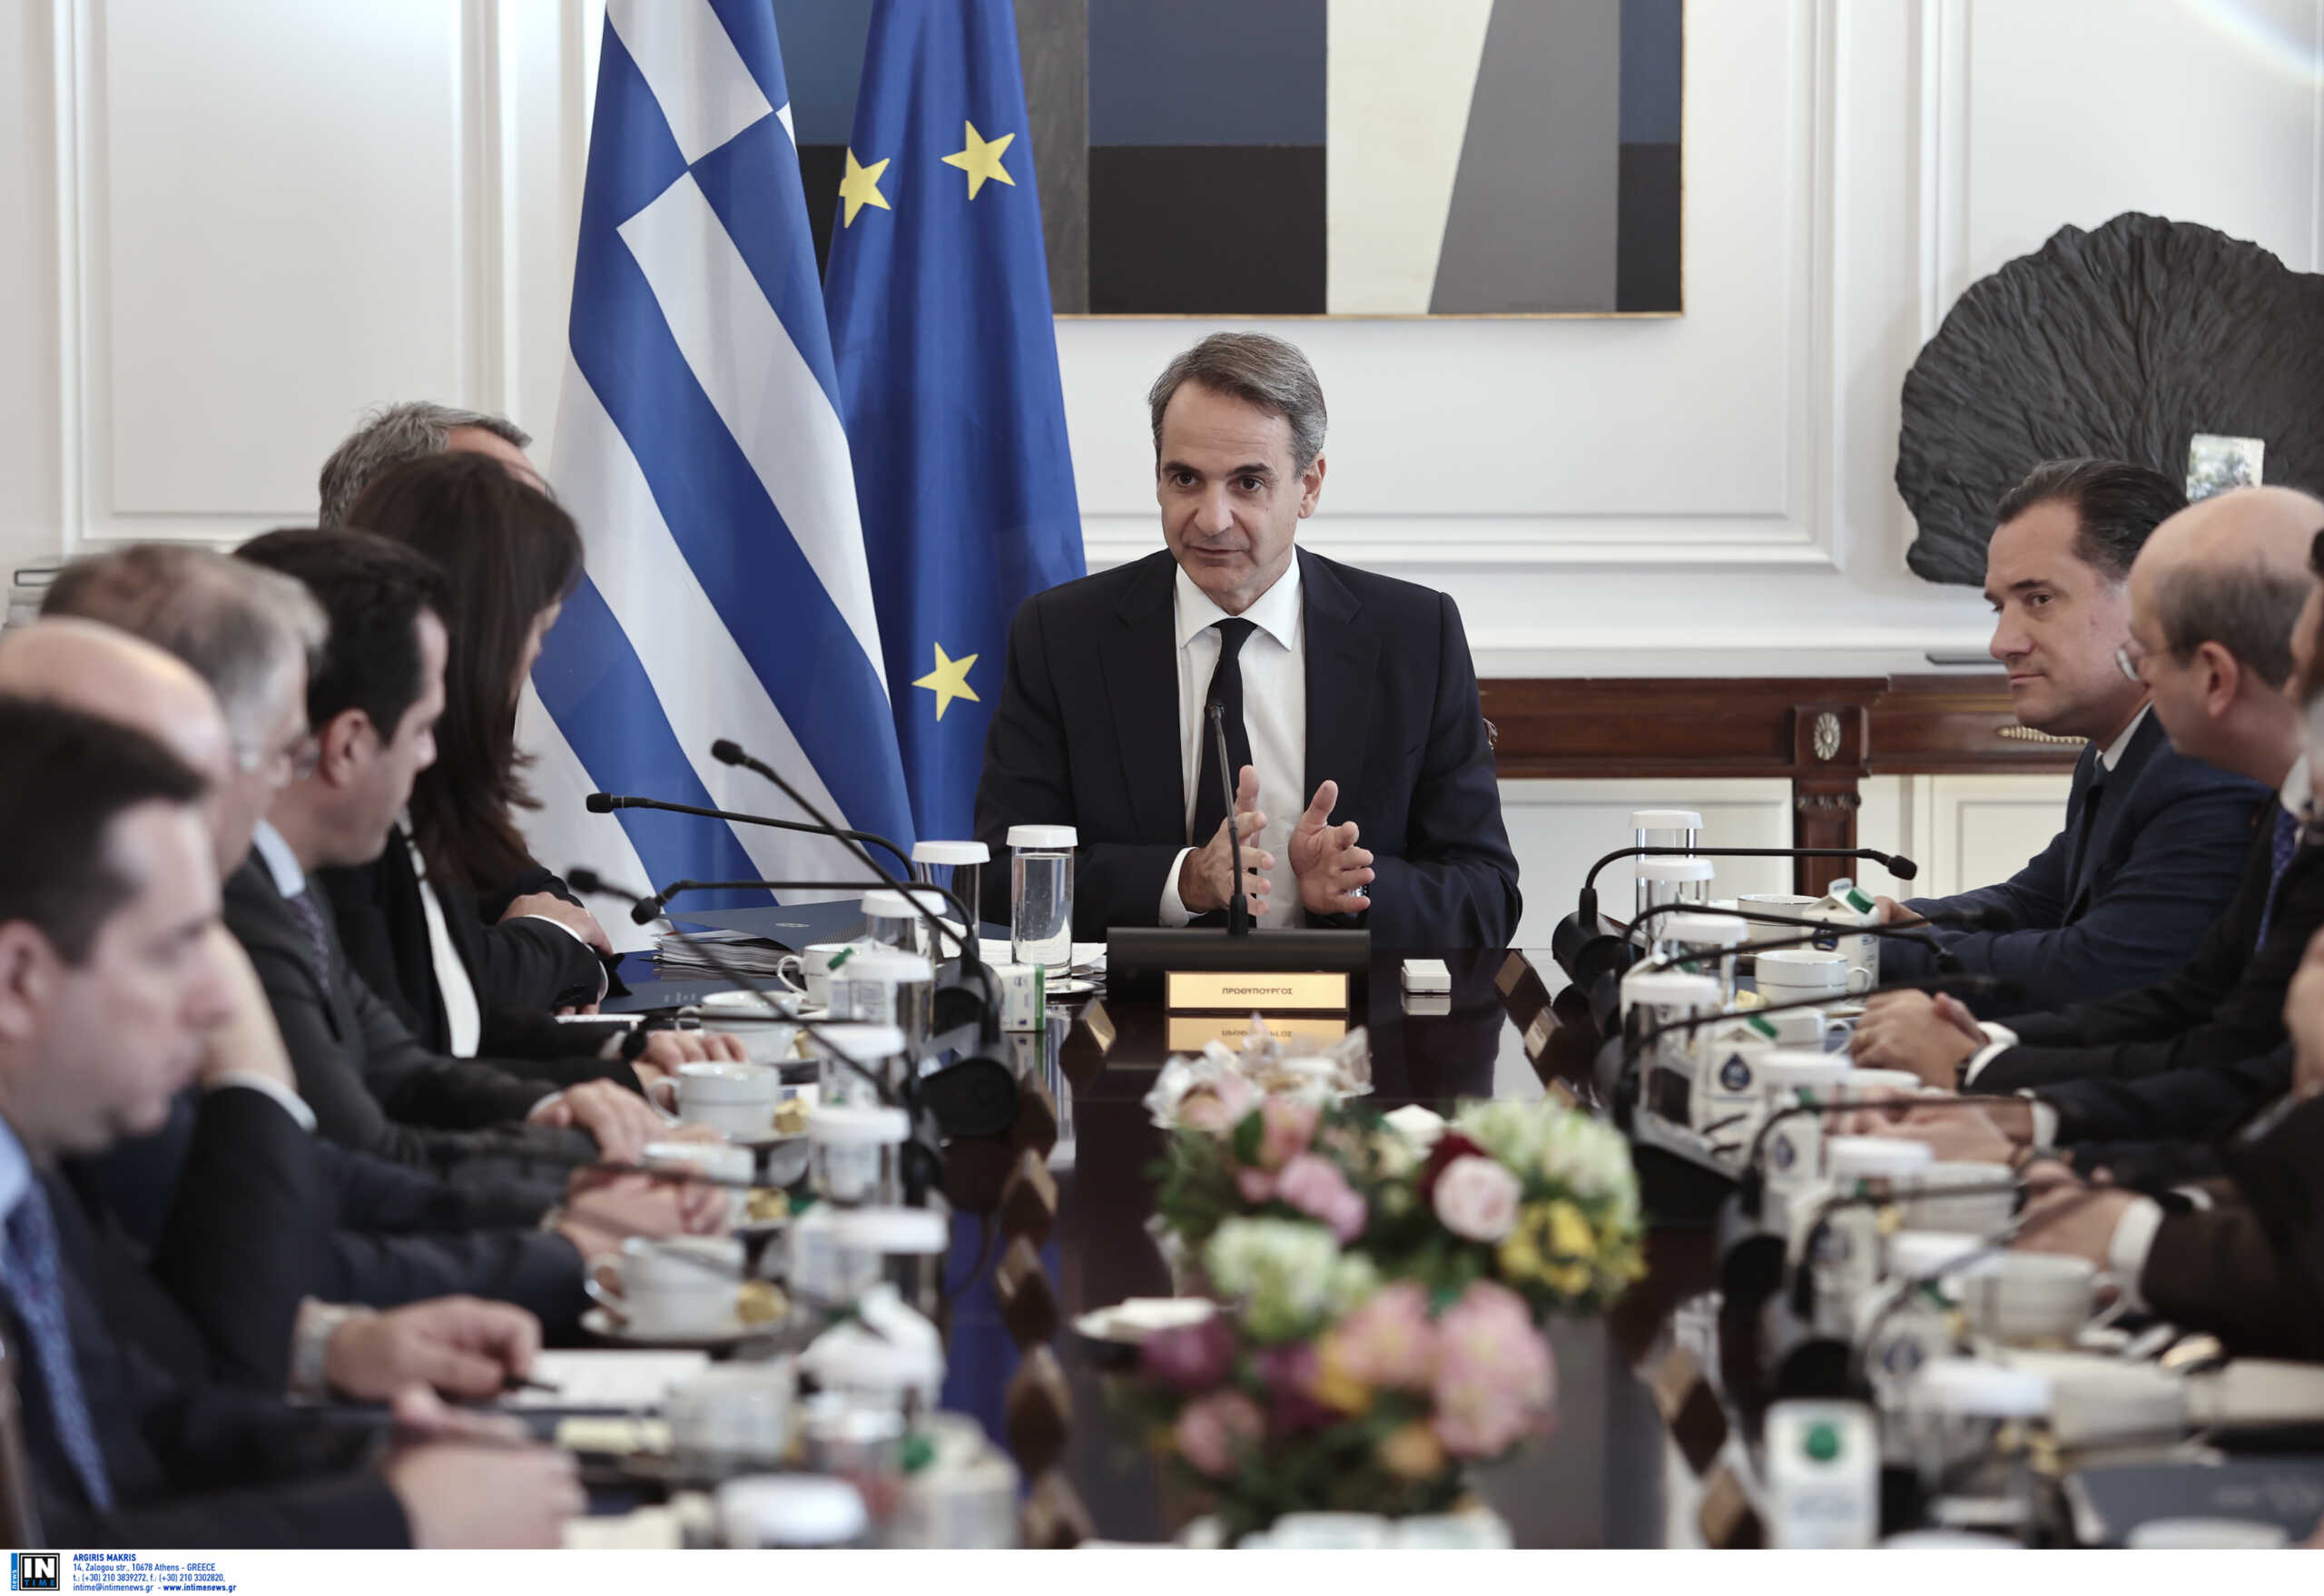 Εκλογές στις 21 Μαΐου ανακοίνωσε ο Μητσοτάκης – Έχει ήδη ενημερωθεί η Πρόεδρος της Δημοκρατίας